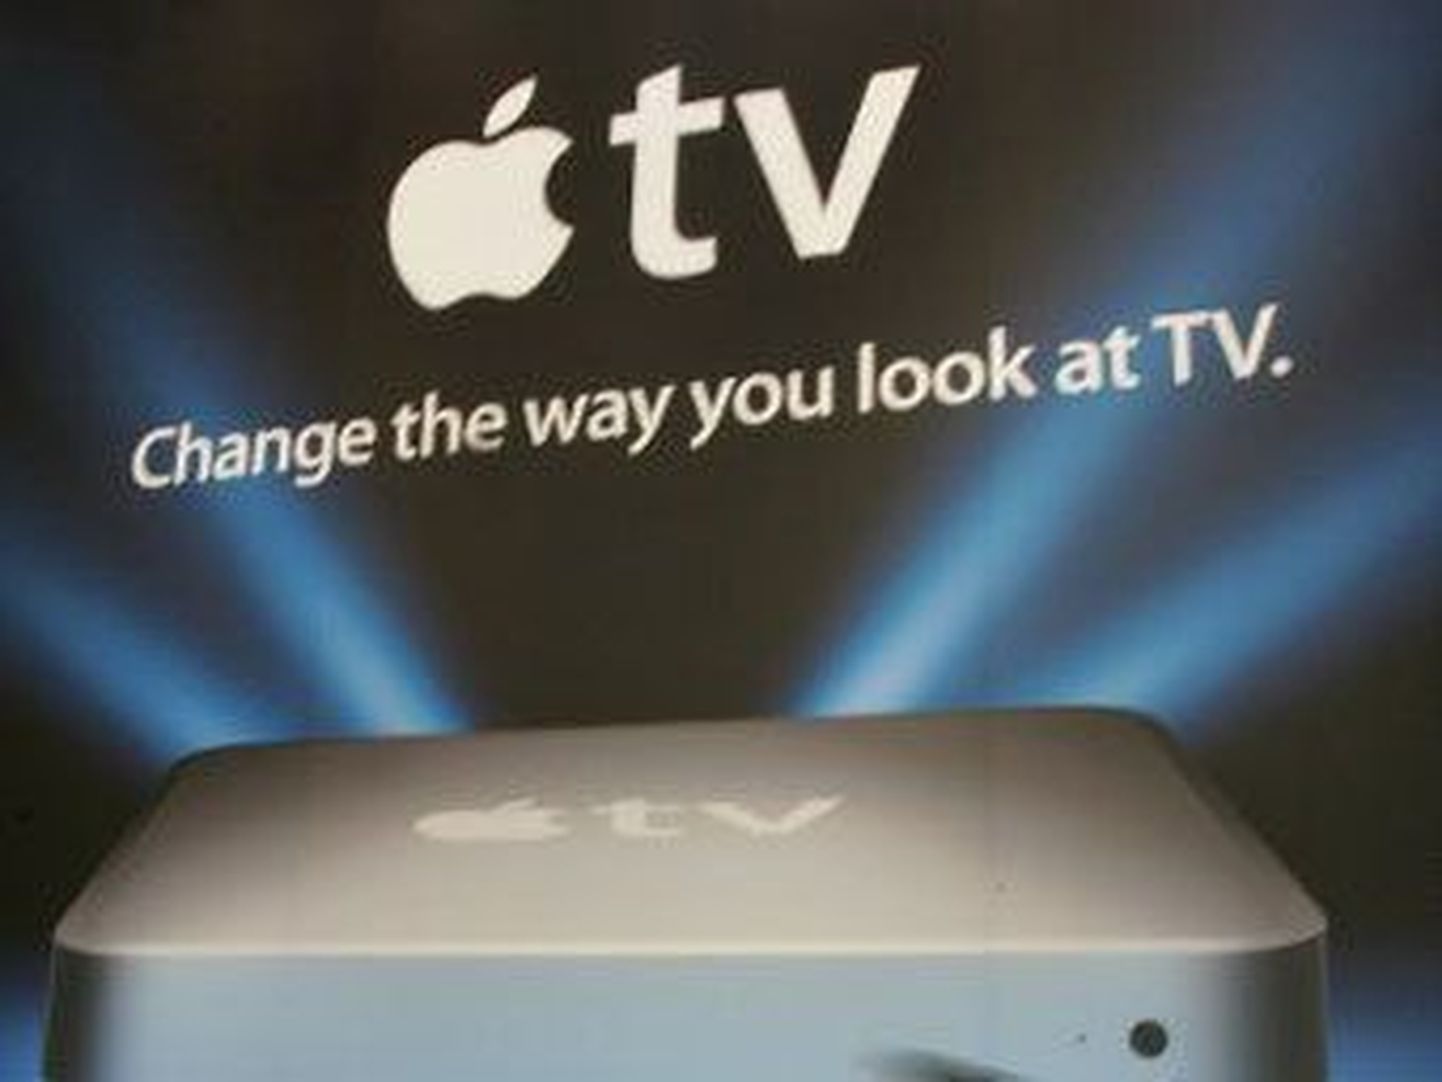 Аналитик компании Piper Jaffray Джин Мюнстер (Gene Munster) рассказал о телевизоре, над которым, как предполагают СМИ, в данный момент работает компания Apple.